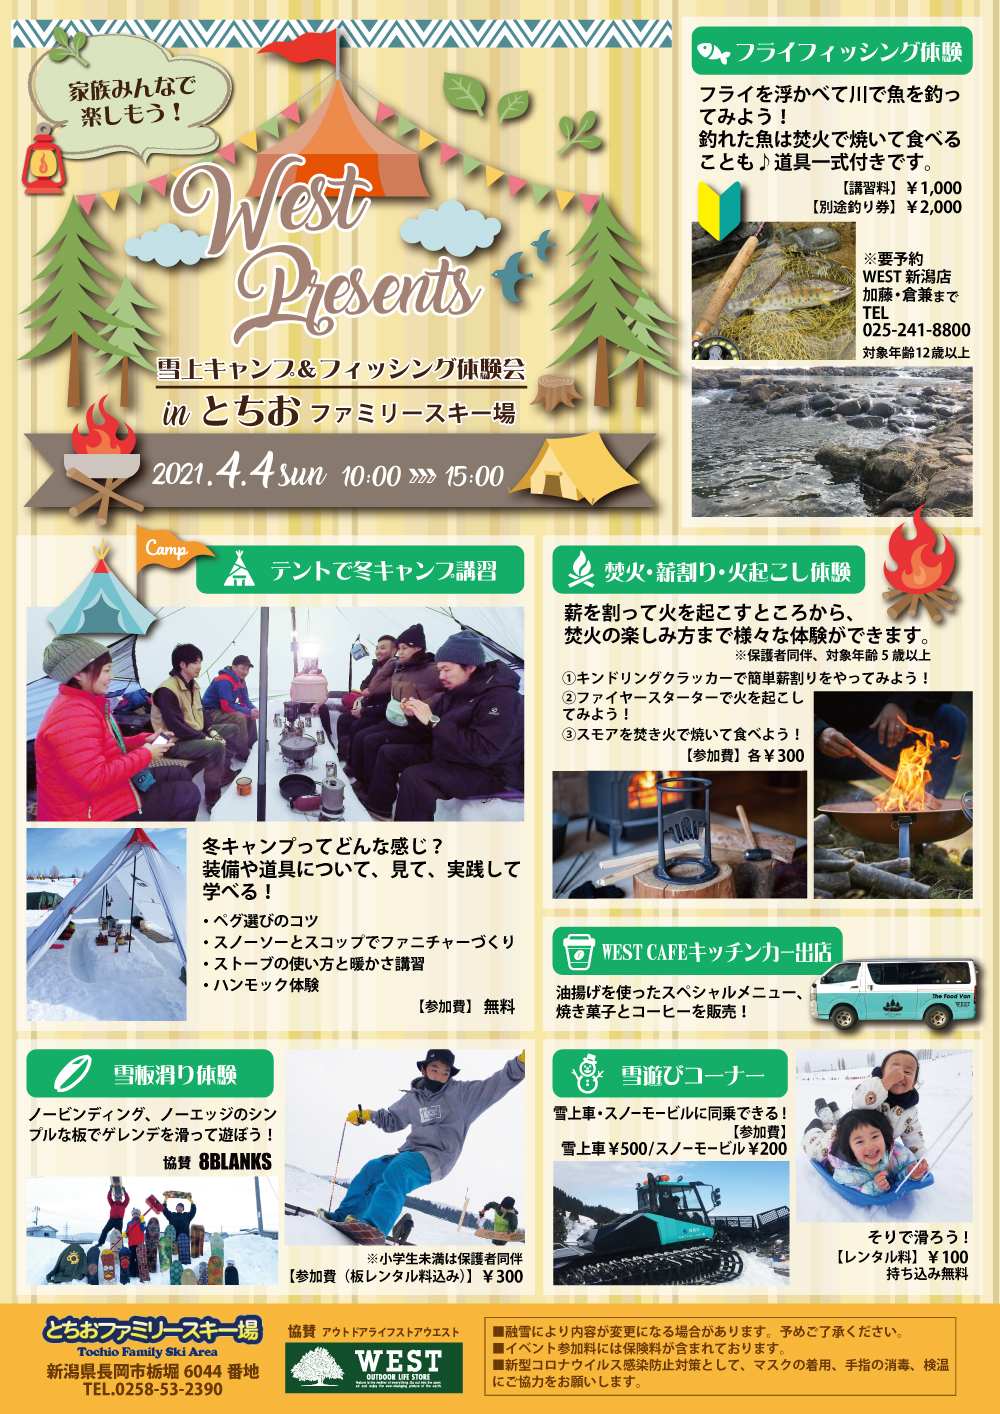 WEST presents 雪上キャンプ&フィッシング体験会 in とちおファミリースキー場